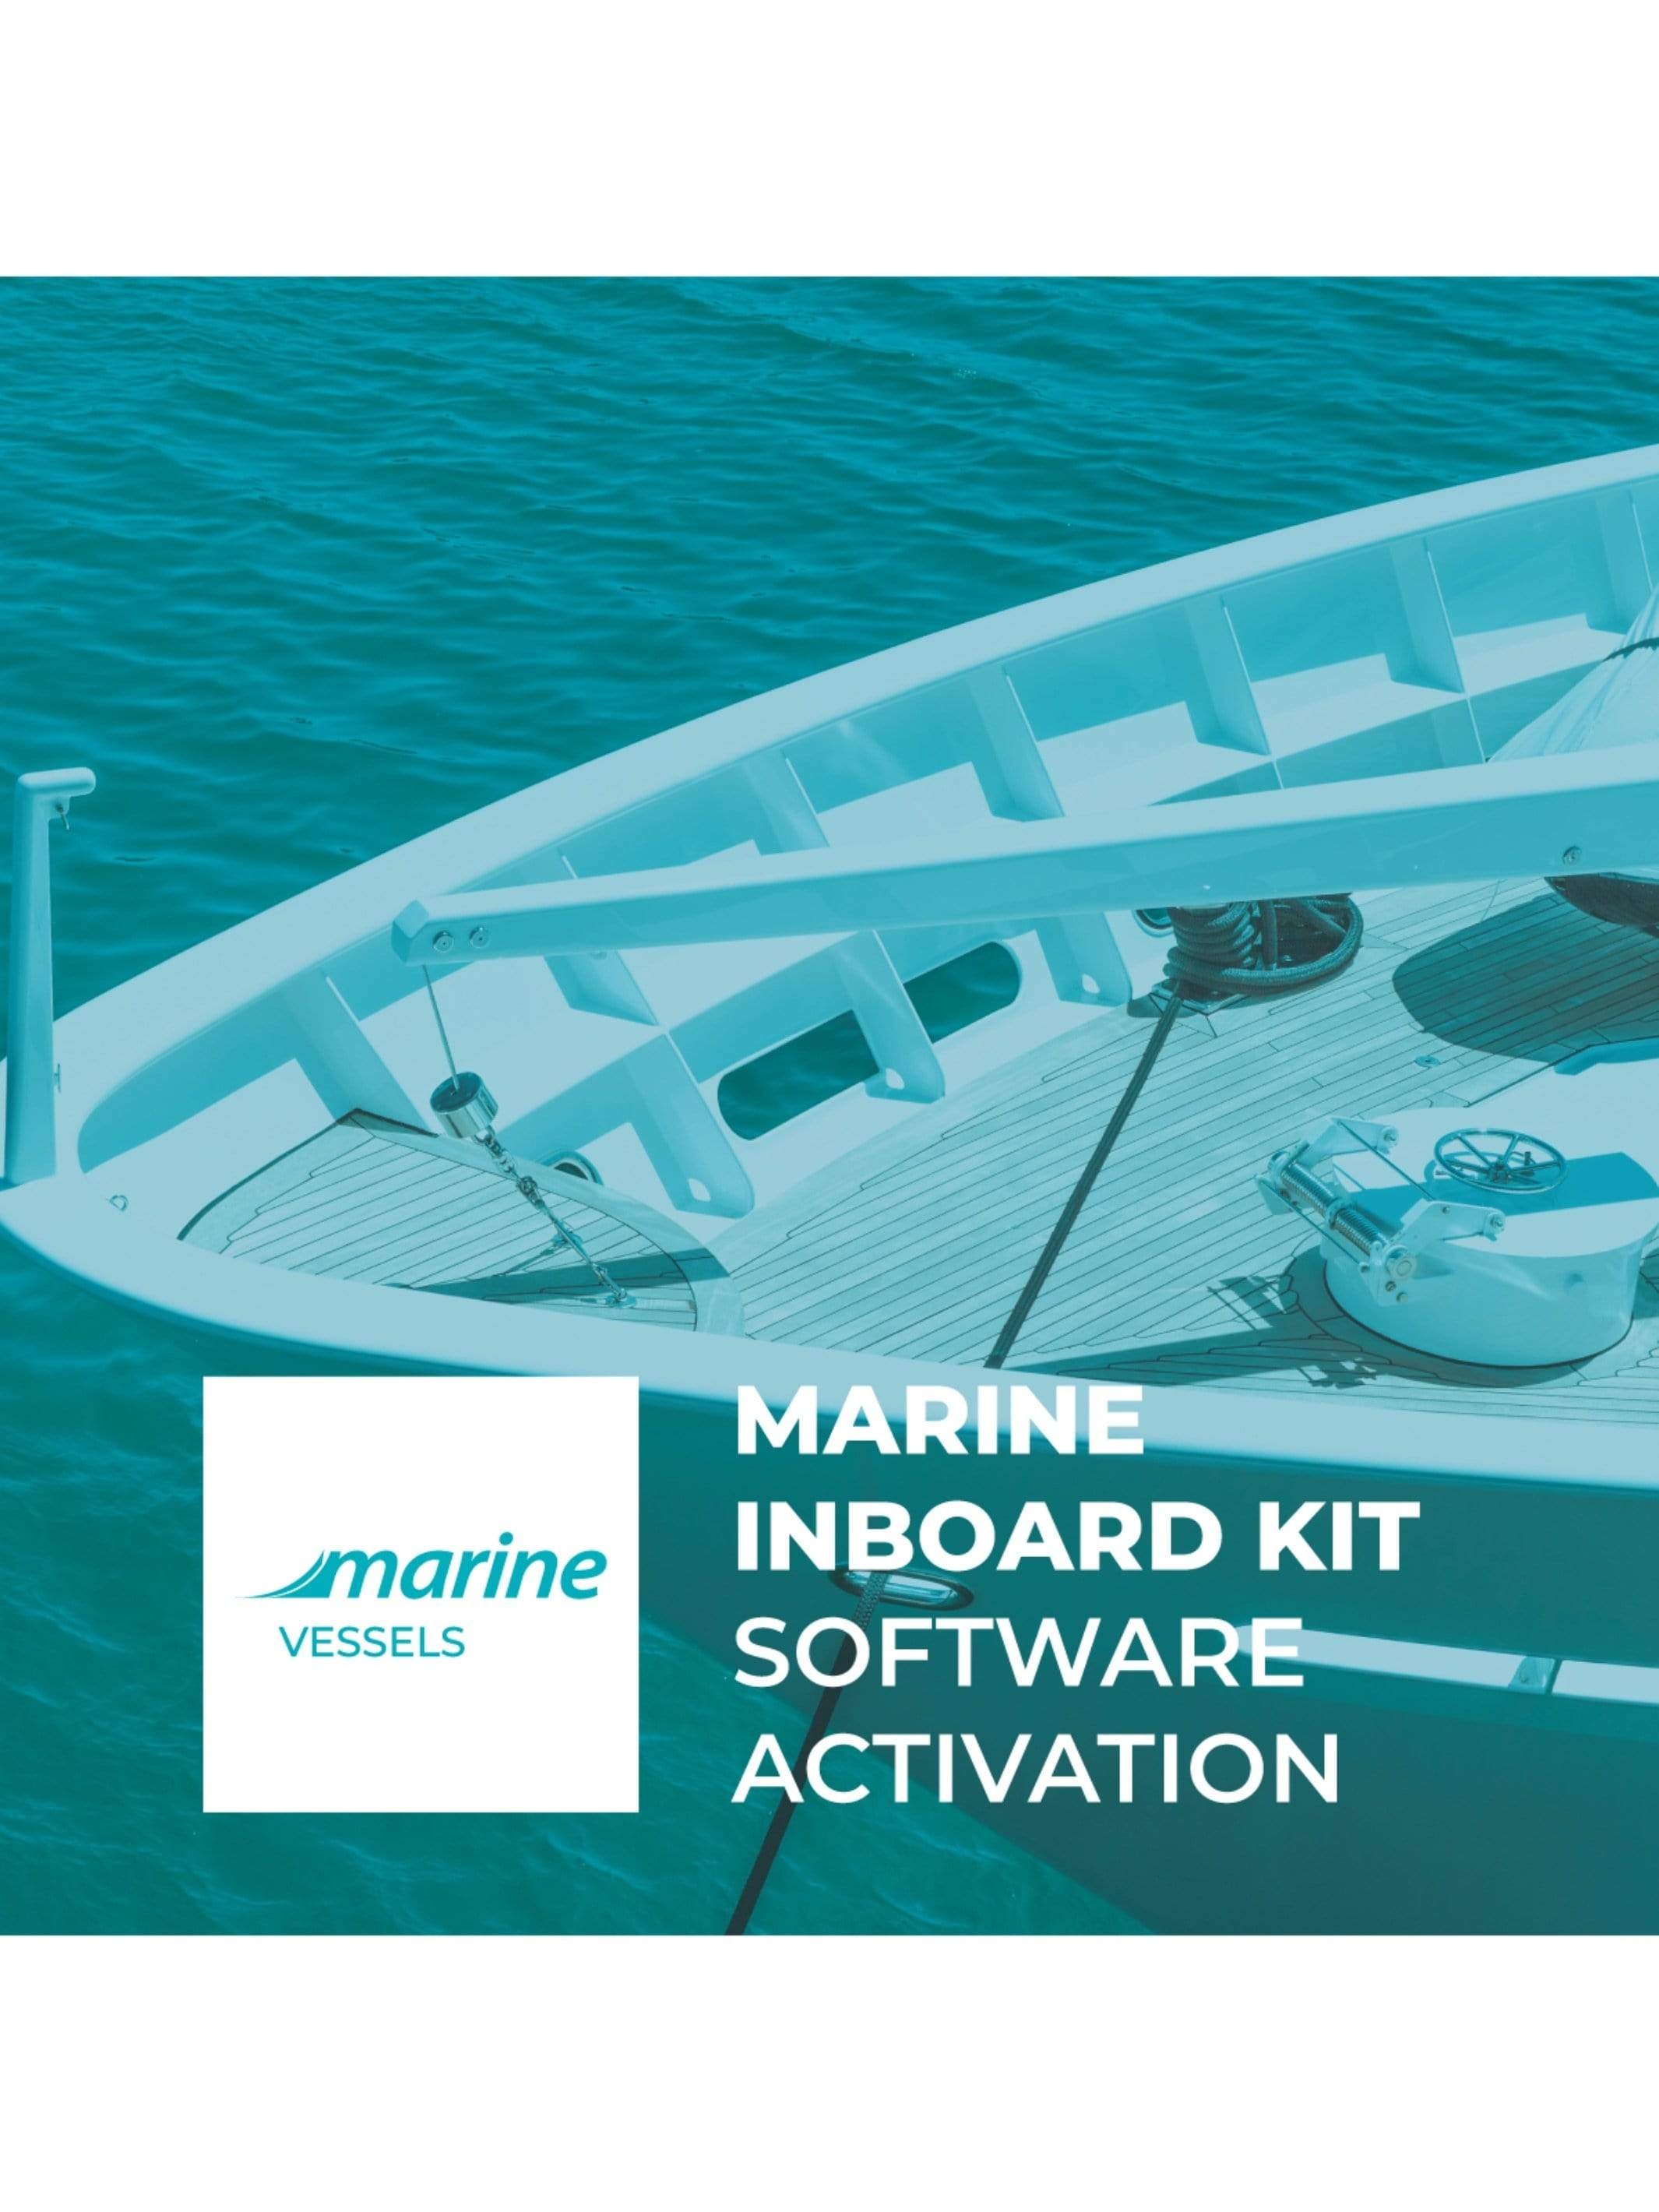 Jaltest Marine Software Activation - Jaltest Marine Inboard Motor Diagnostic Tool Kit